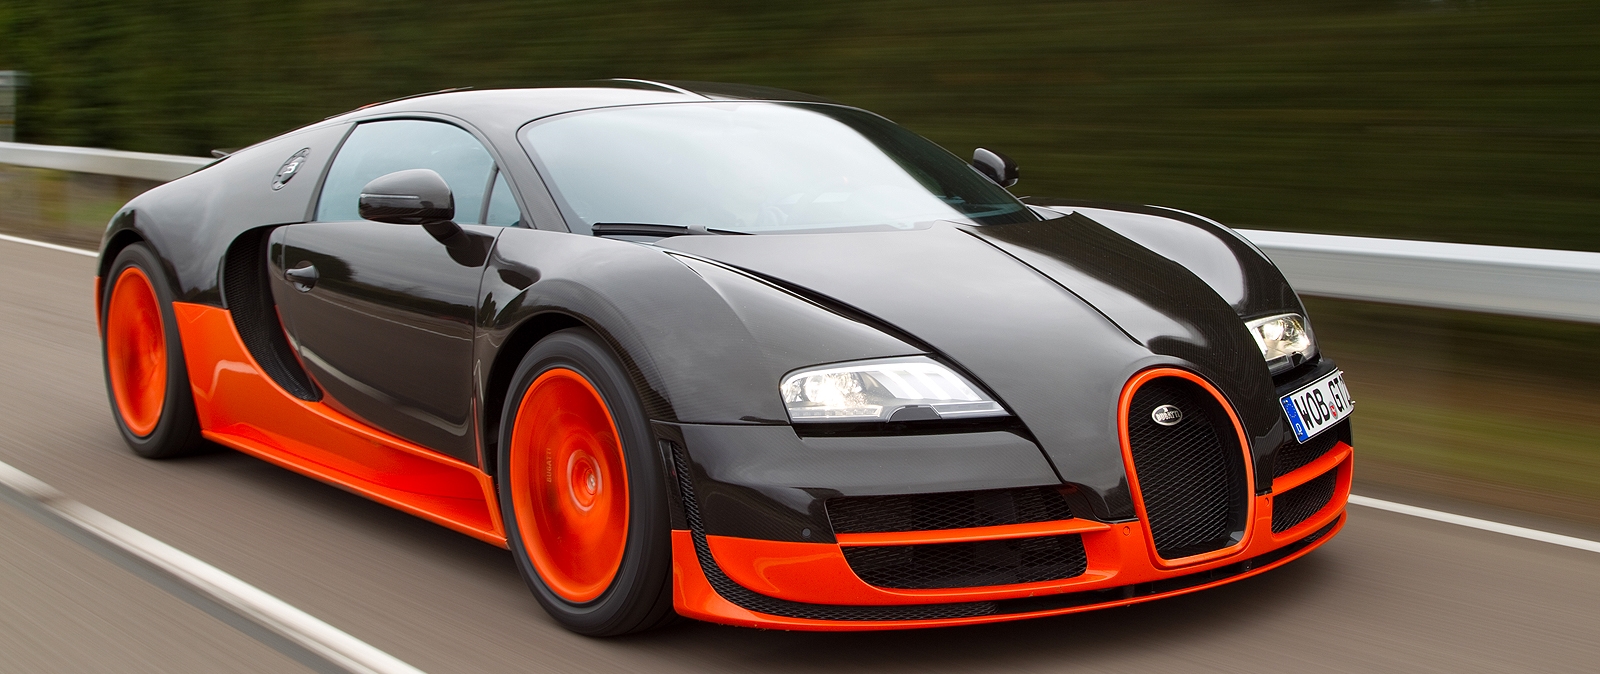 Bugatti Veyron и другие автомобили